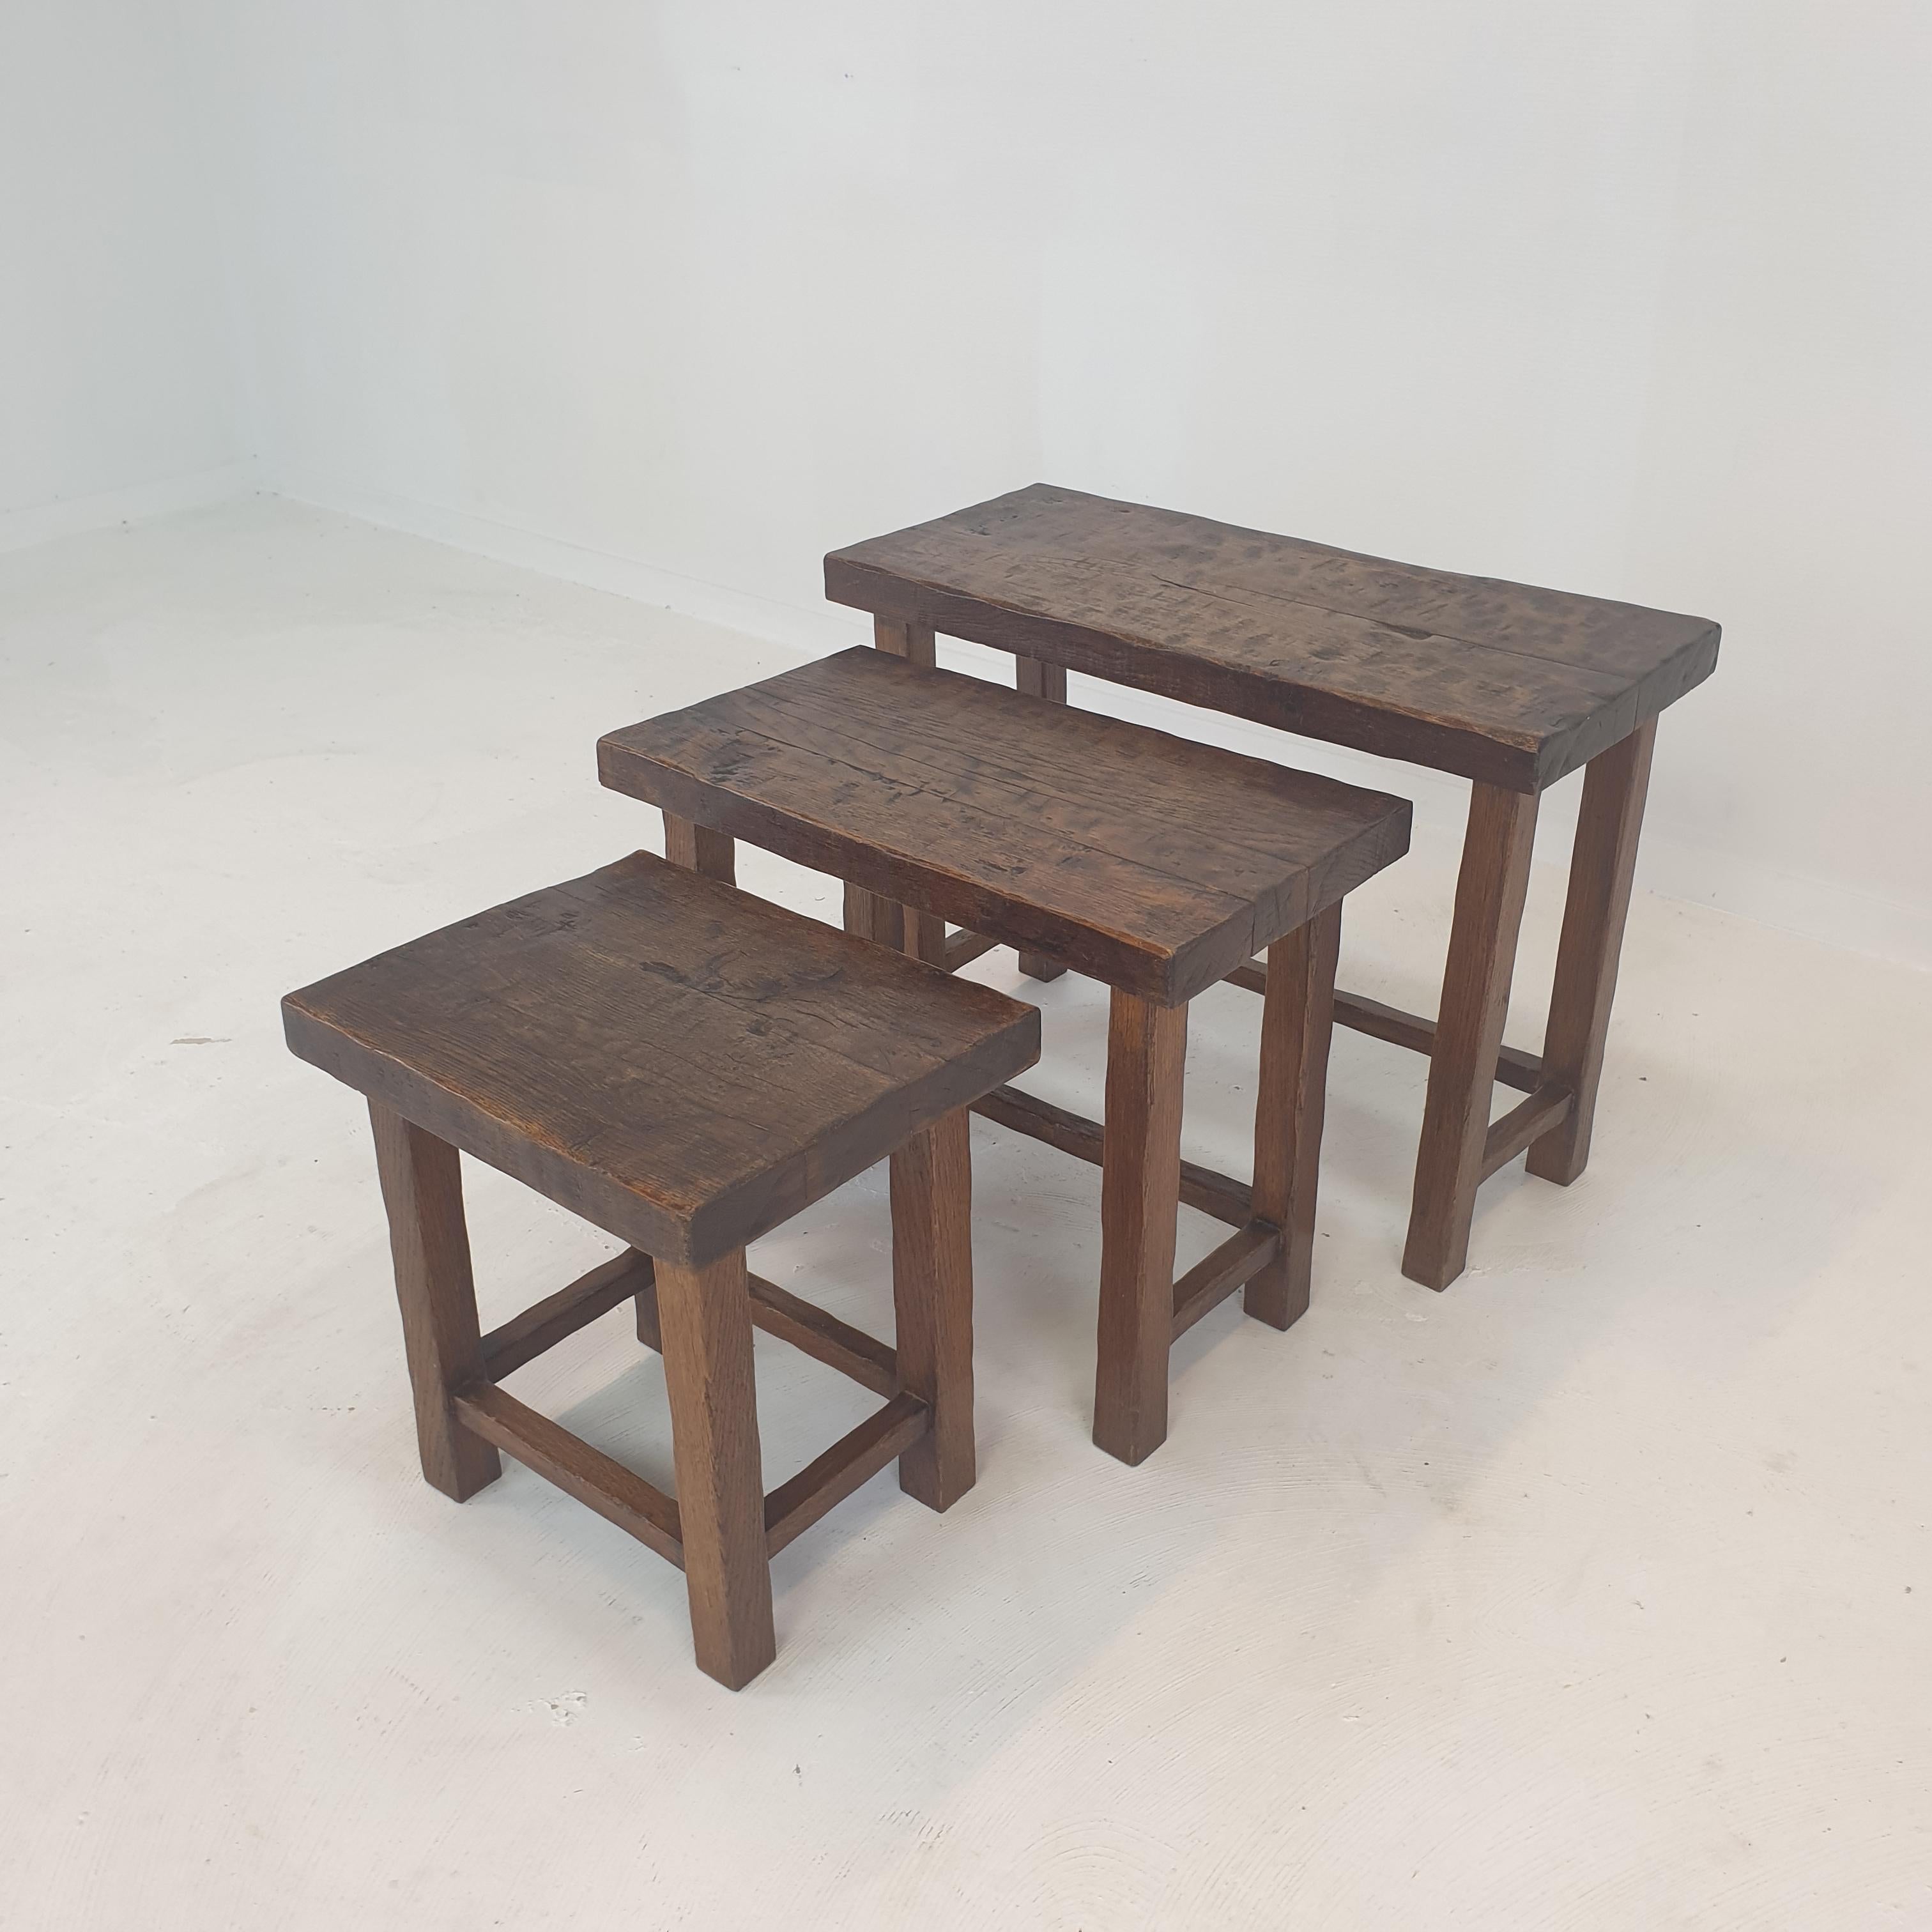 Sehr schöner Satz von 3 Couchtischen oder Nisttischen, 1960er Jahre.
Die Tische haben alle eine unterschiedliche Größe, so dass sie ineinander passen.

Dieses brutalistische Set wird in Handarbeit aus Eichenholz hergestellt.